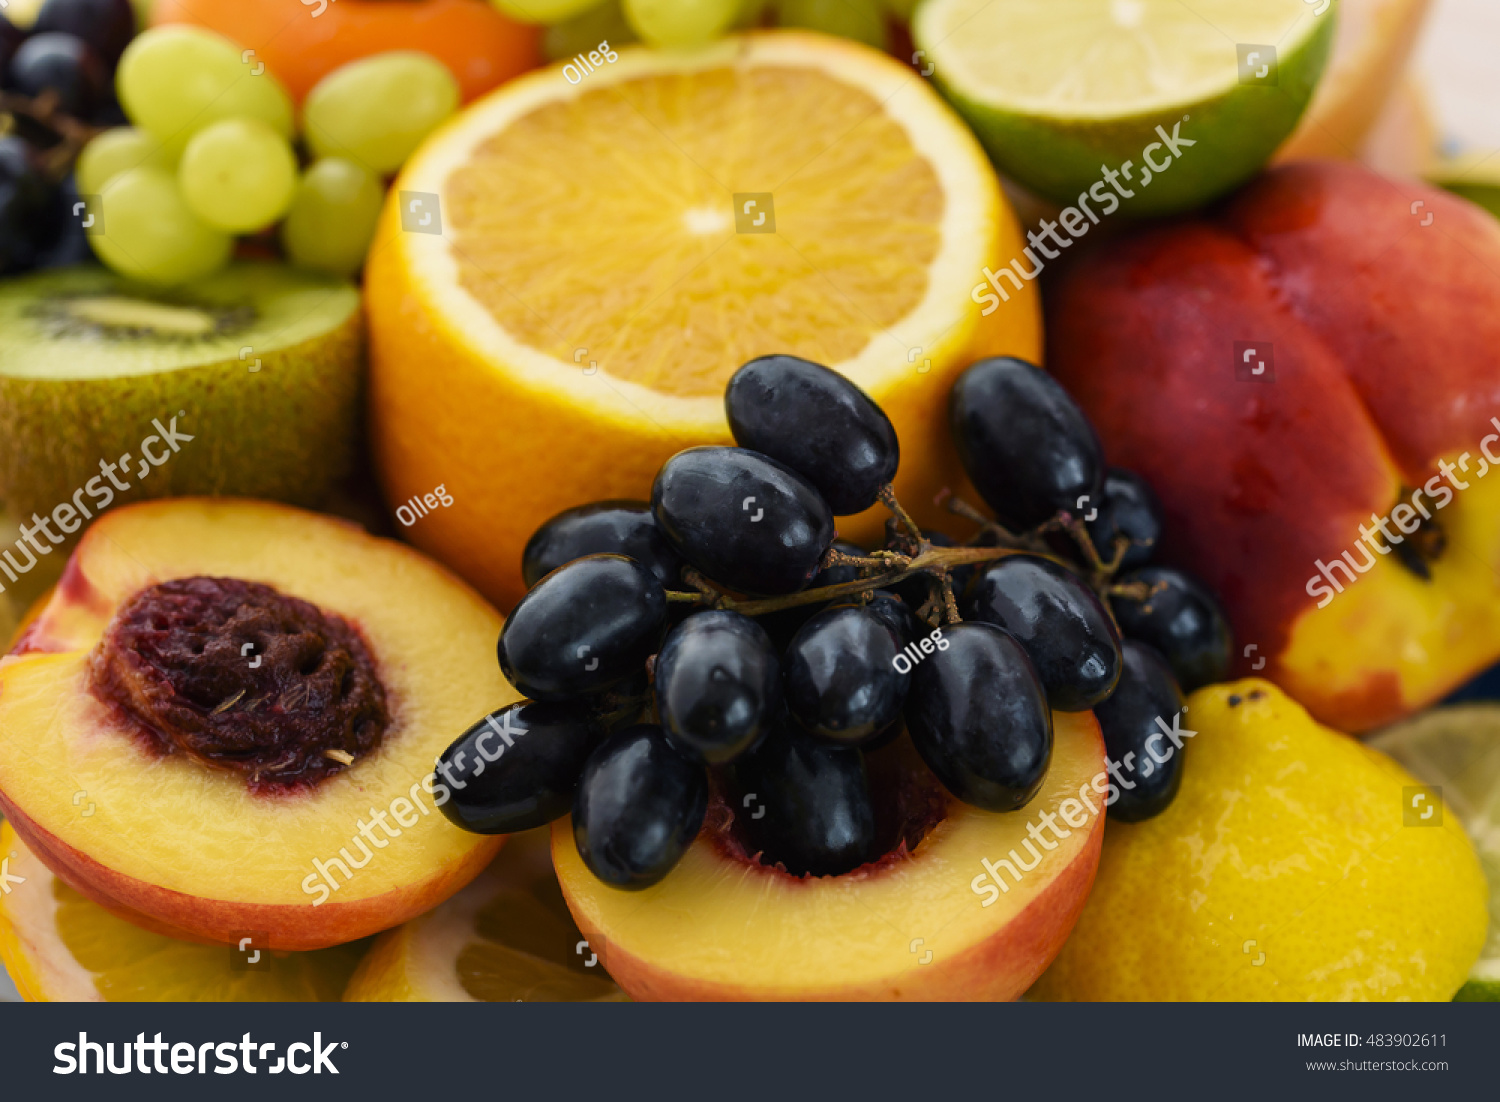 Fresh fruit slices. Grape, apple, kiwi fruits. Background of healthy fresh fruits #483902611